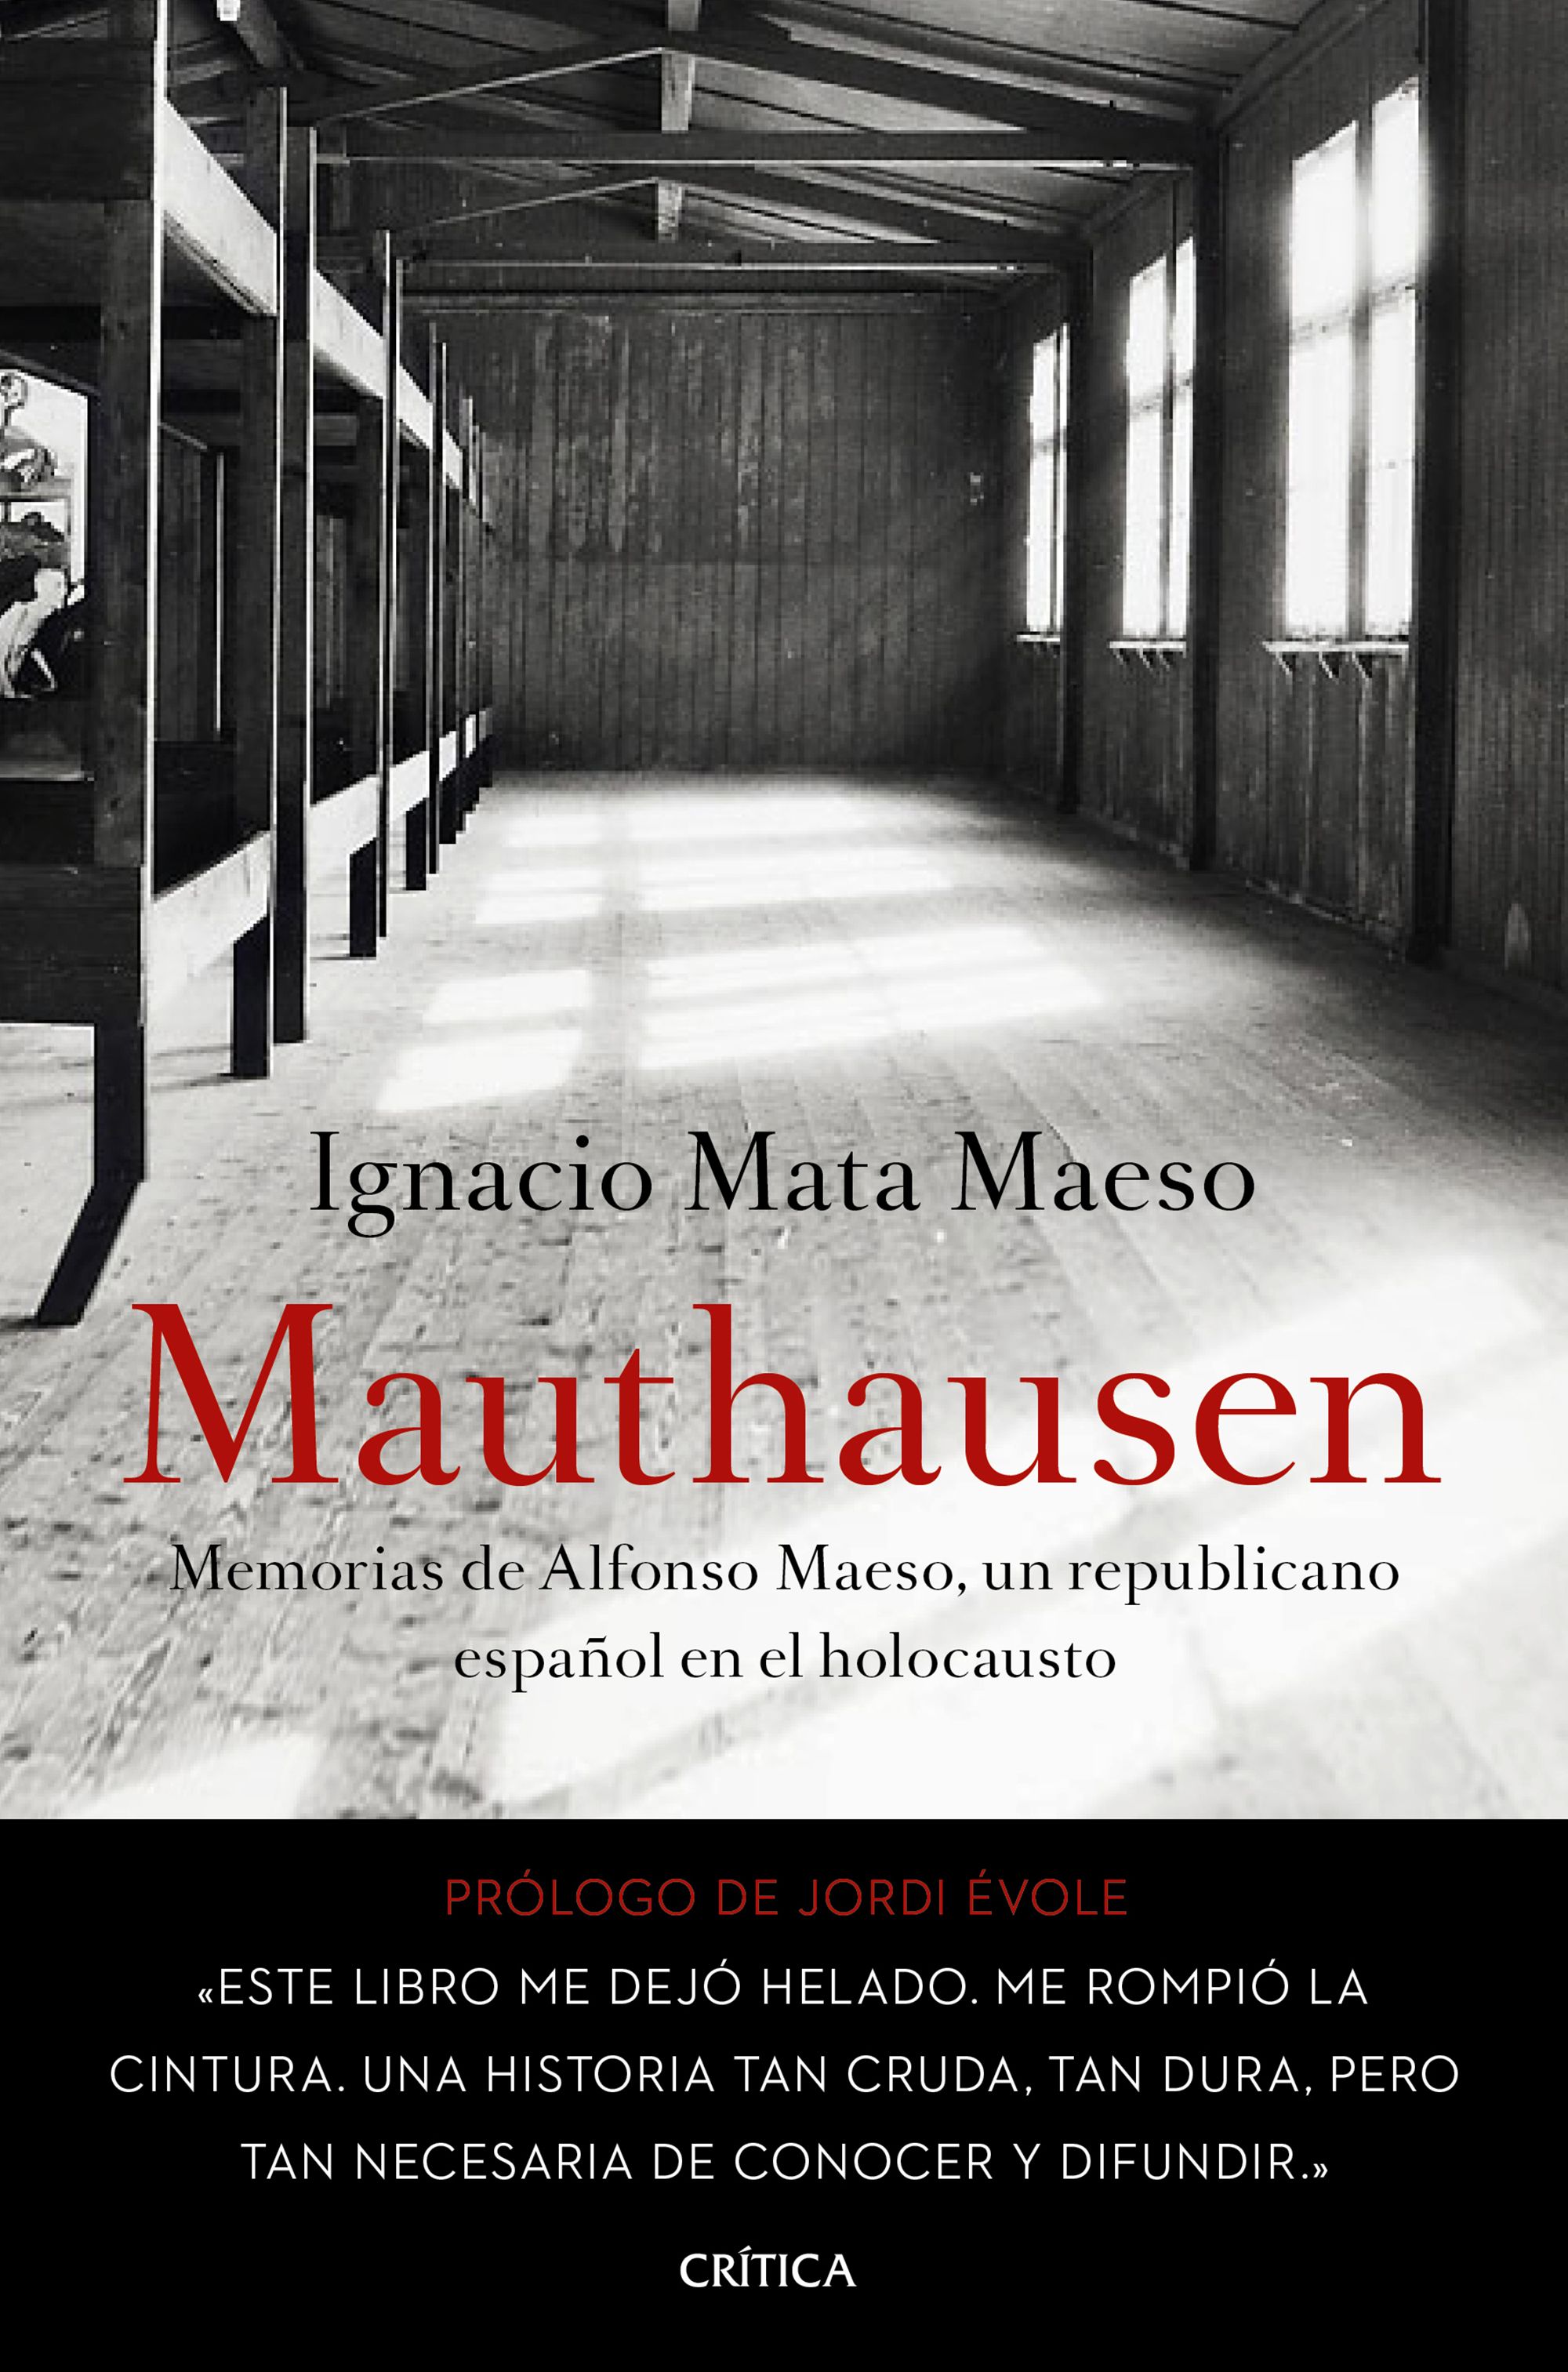 Mauthausen "Memorias de Alfonso Maeso, un republicano español en el holocausto"